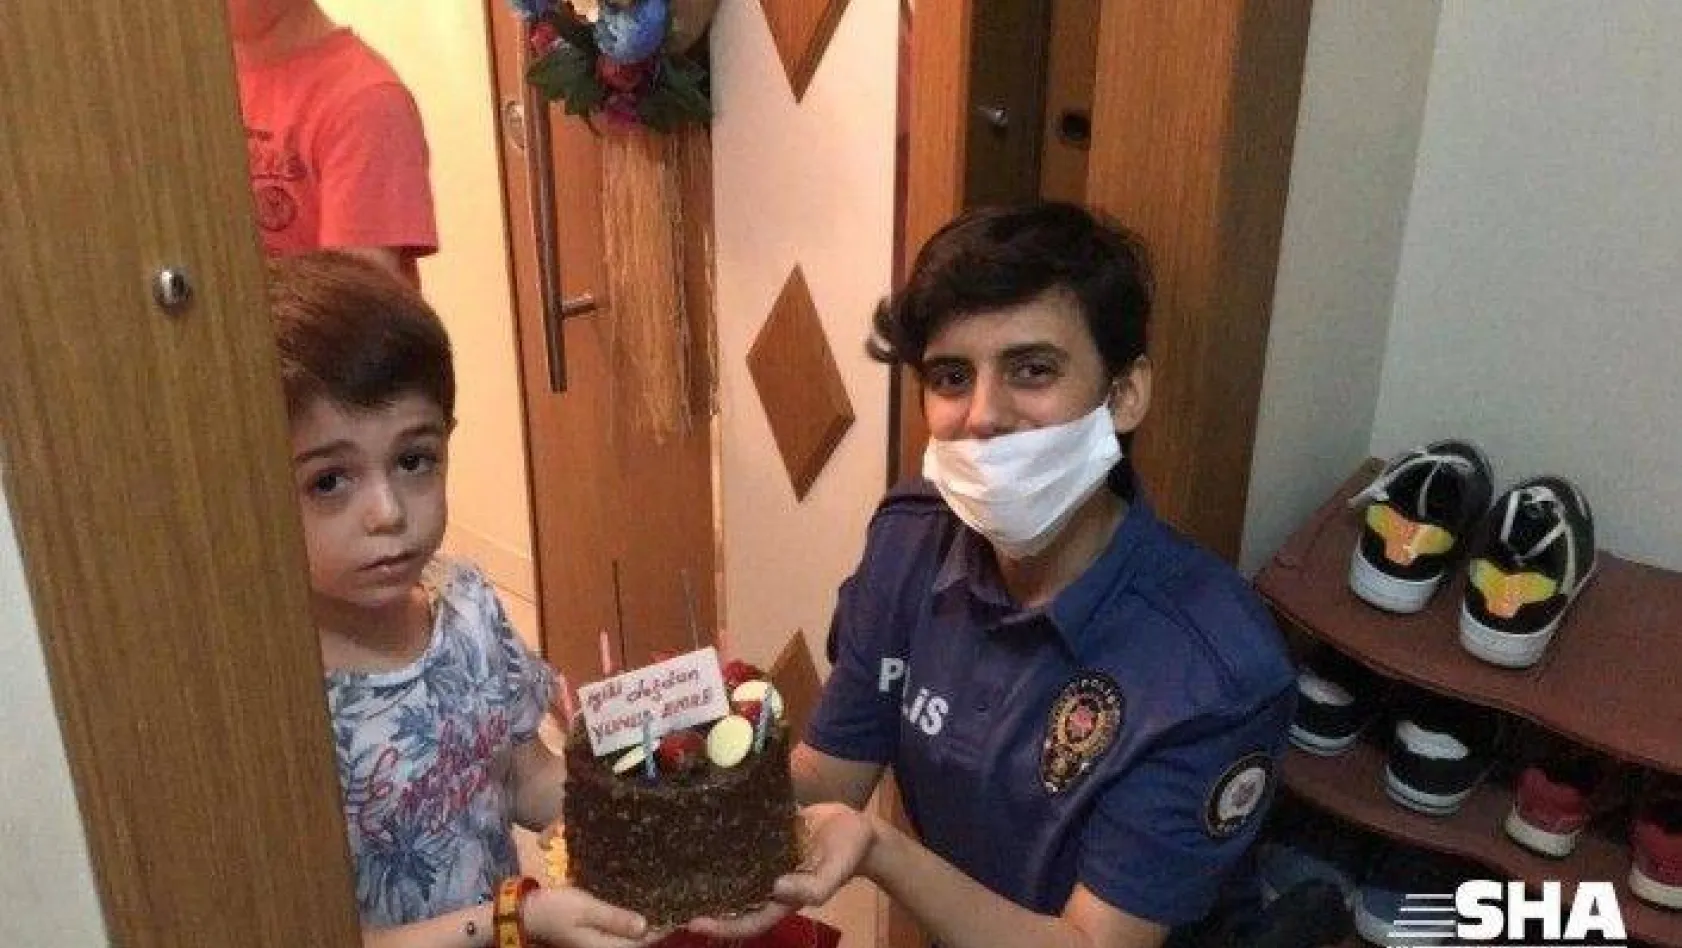 Maltepe'de polisten 6 yaşındaki çocuğa doğum günü sürprizi